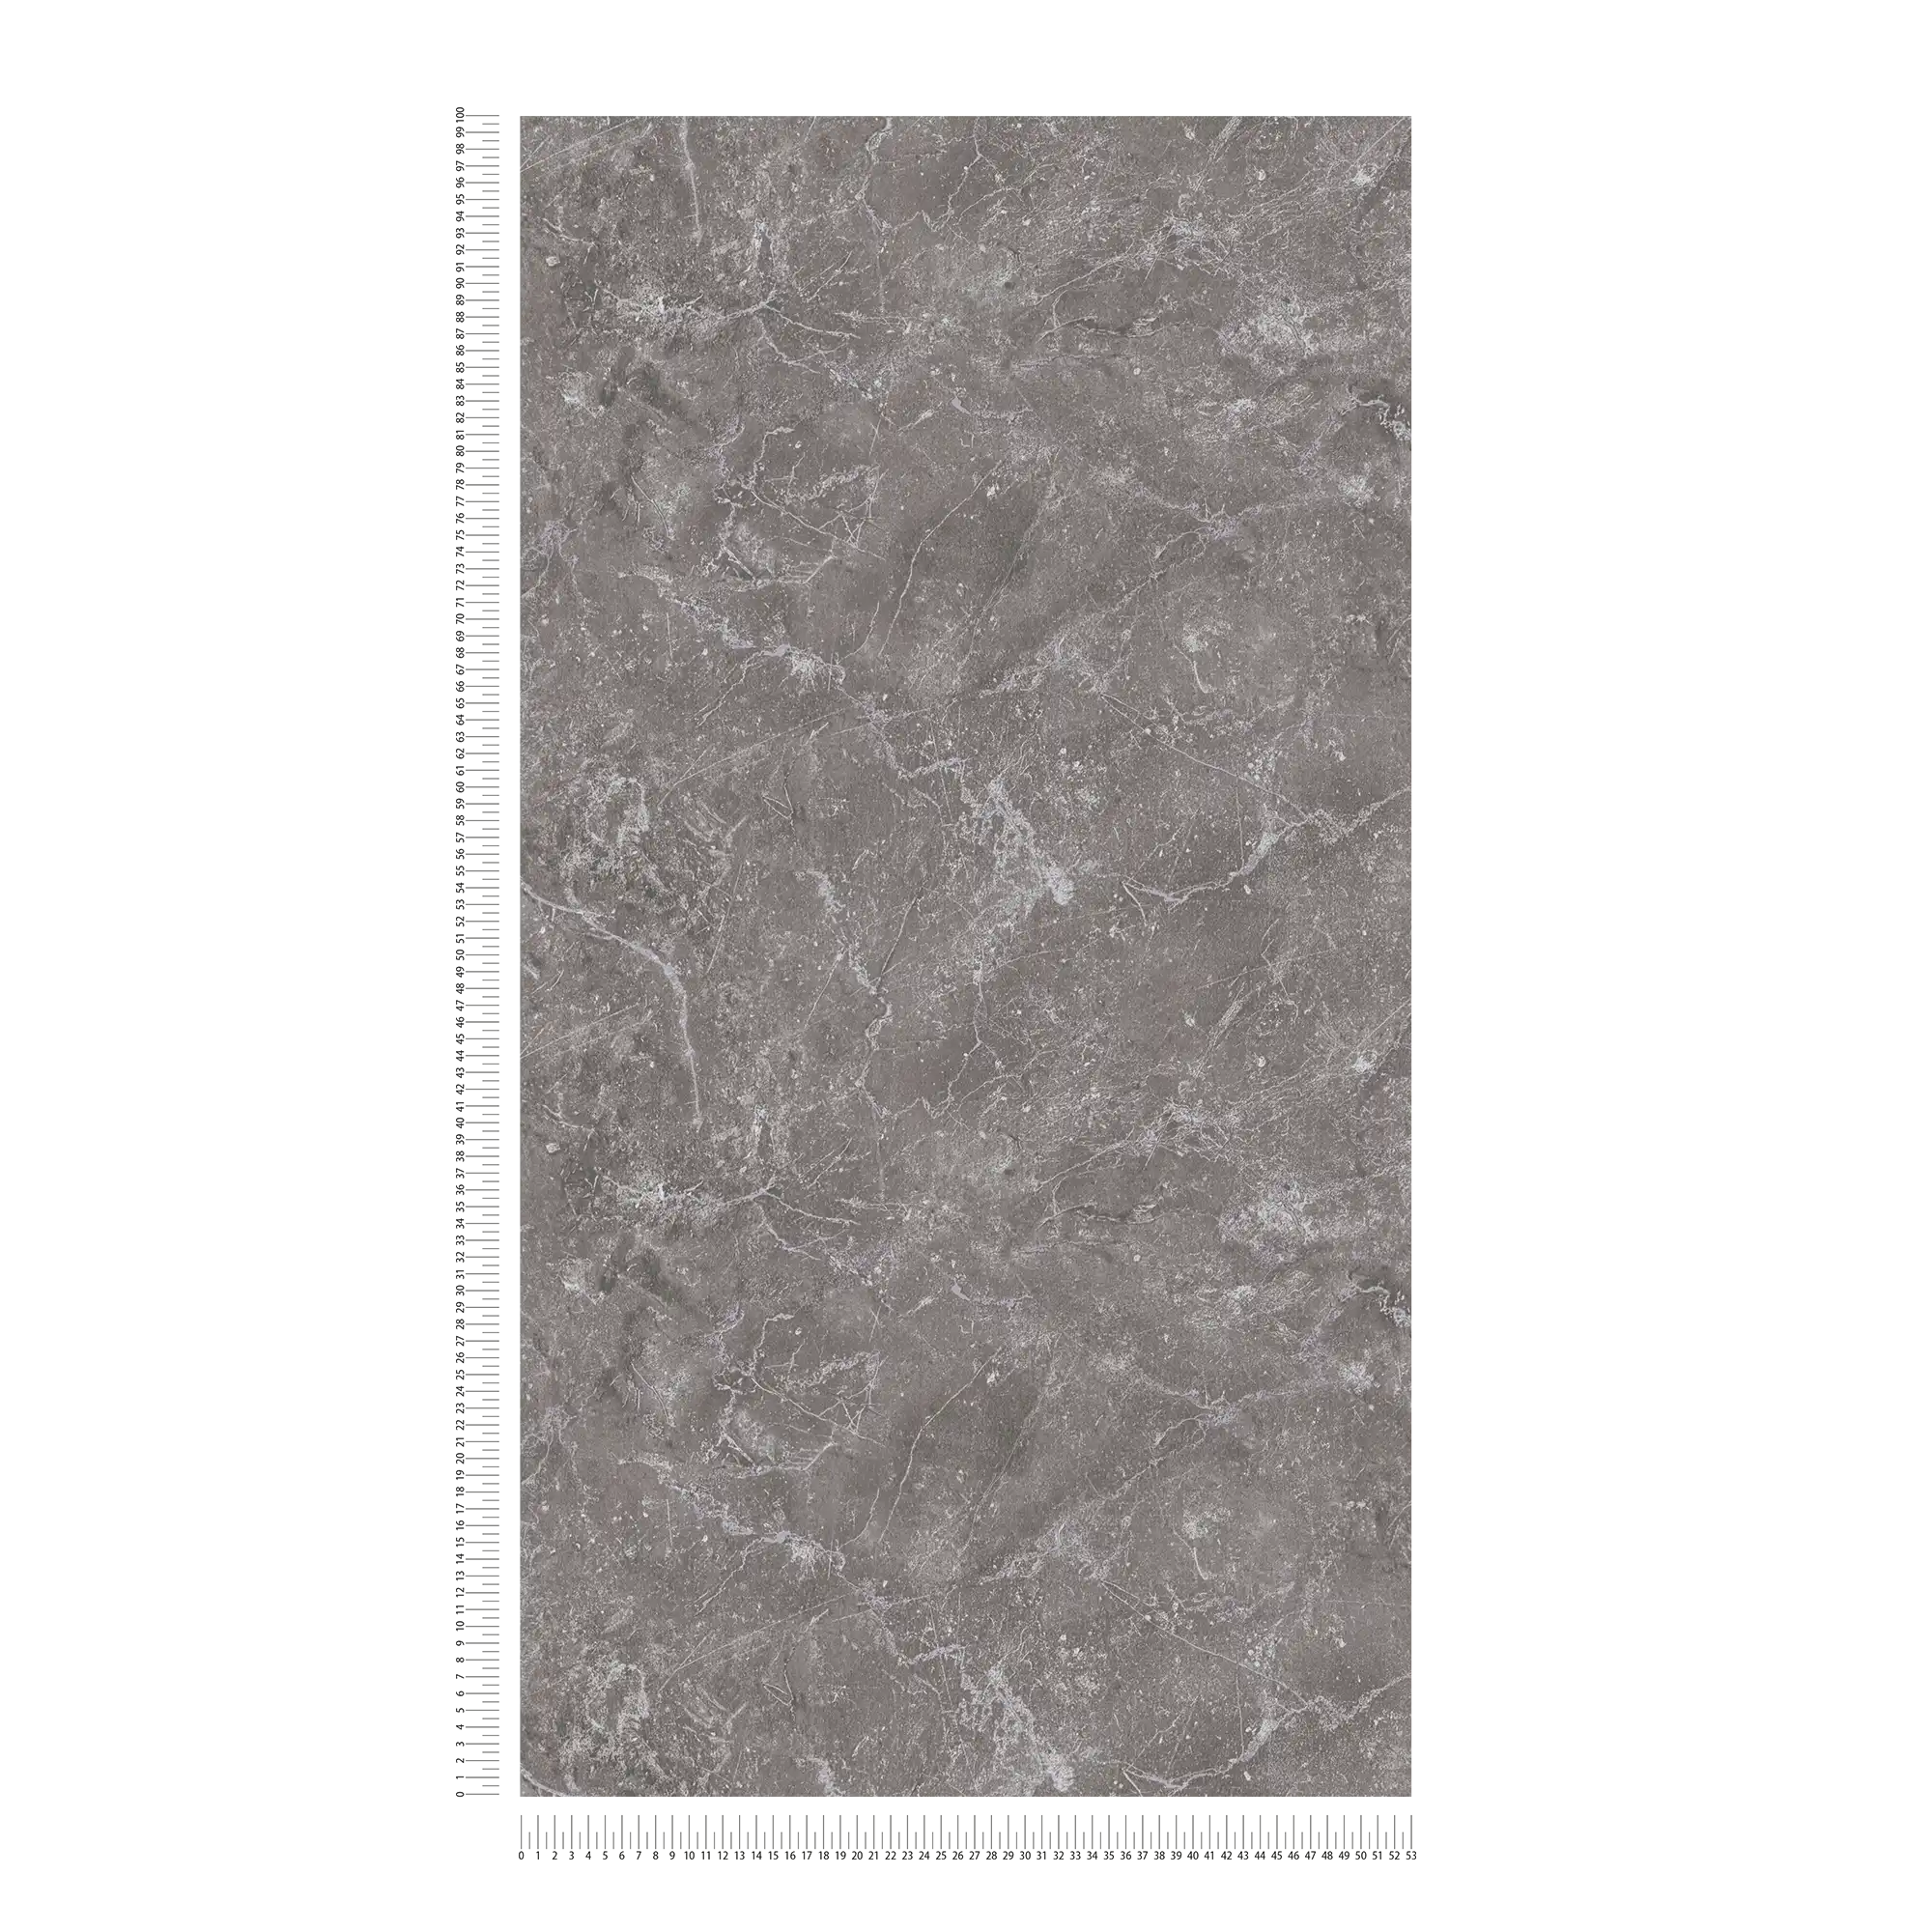             Carta da parati in marmo grigio Design by MICHALSKY
        